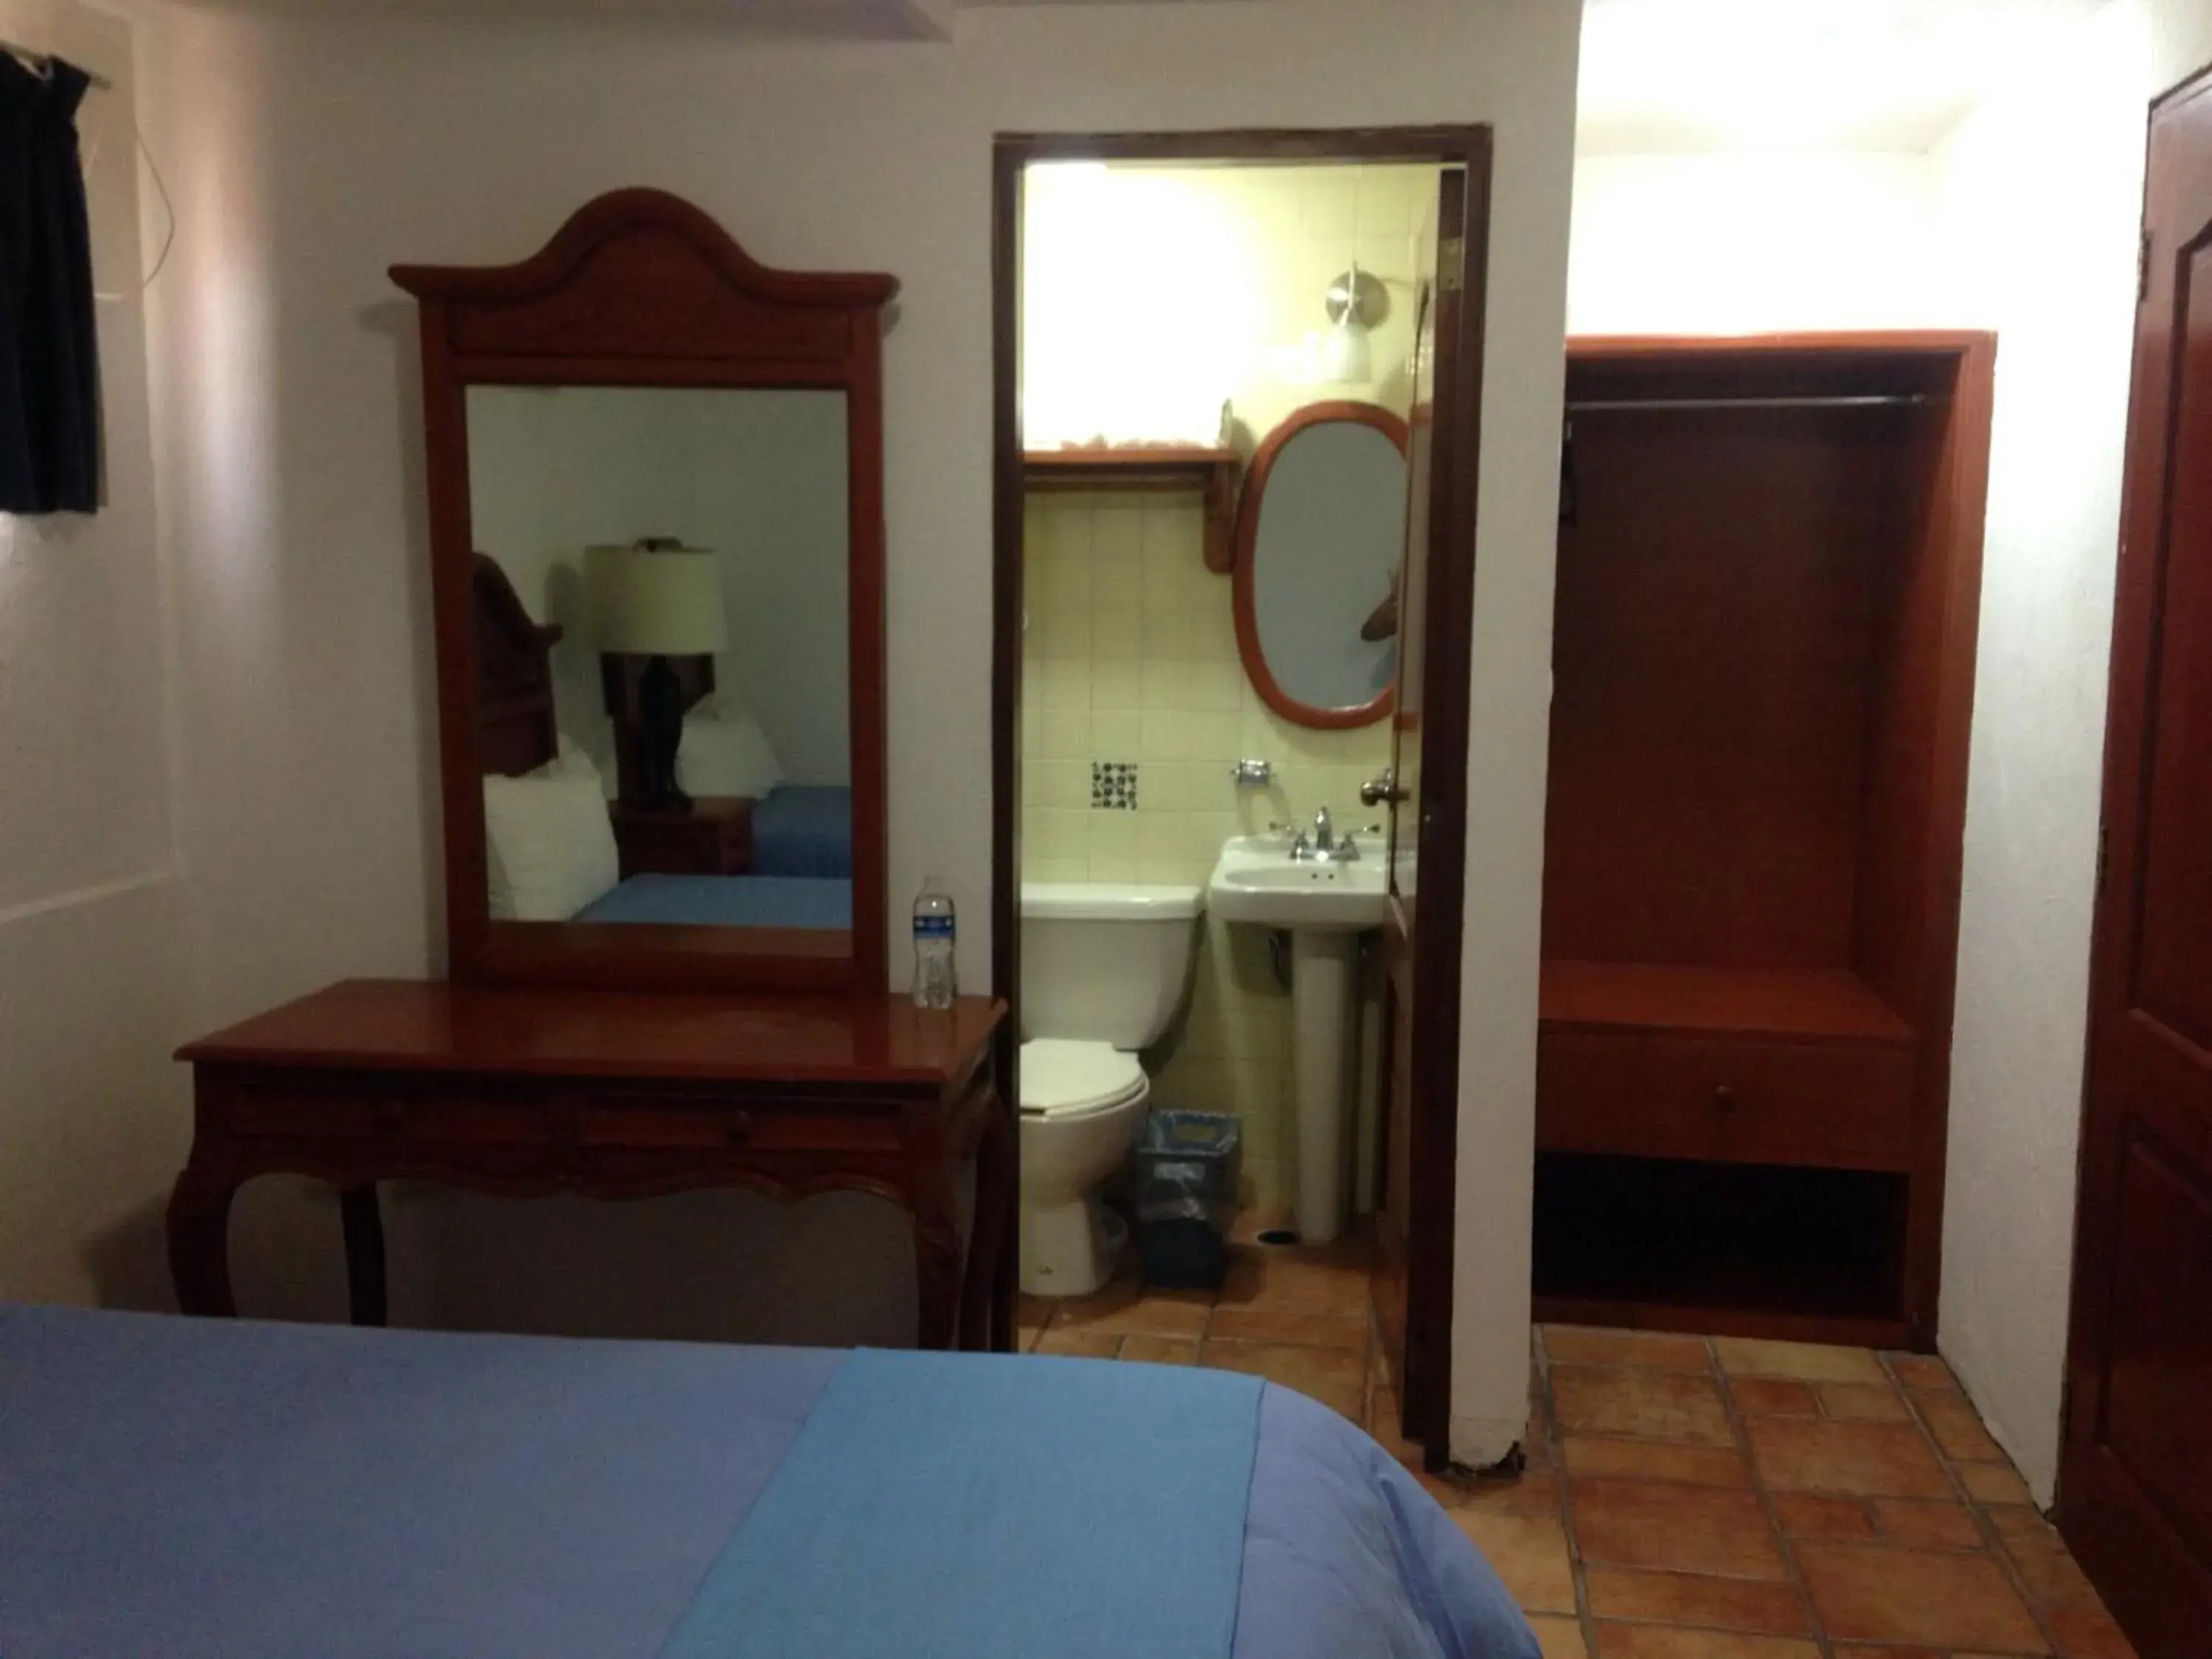 Bathroom in Hotel Meson del Mar